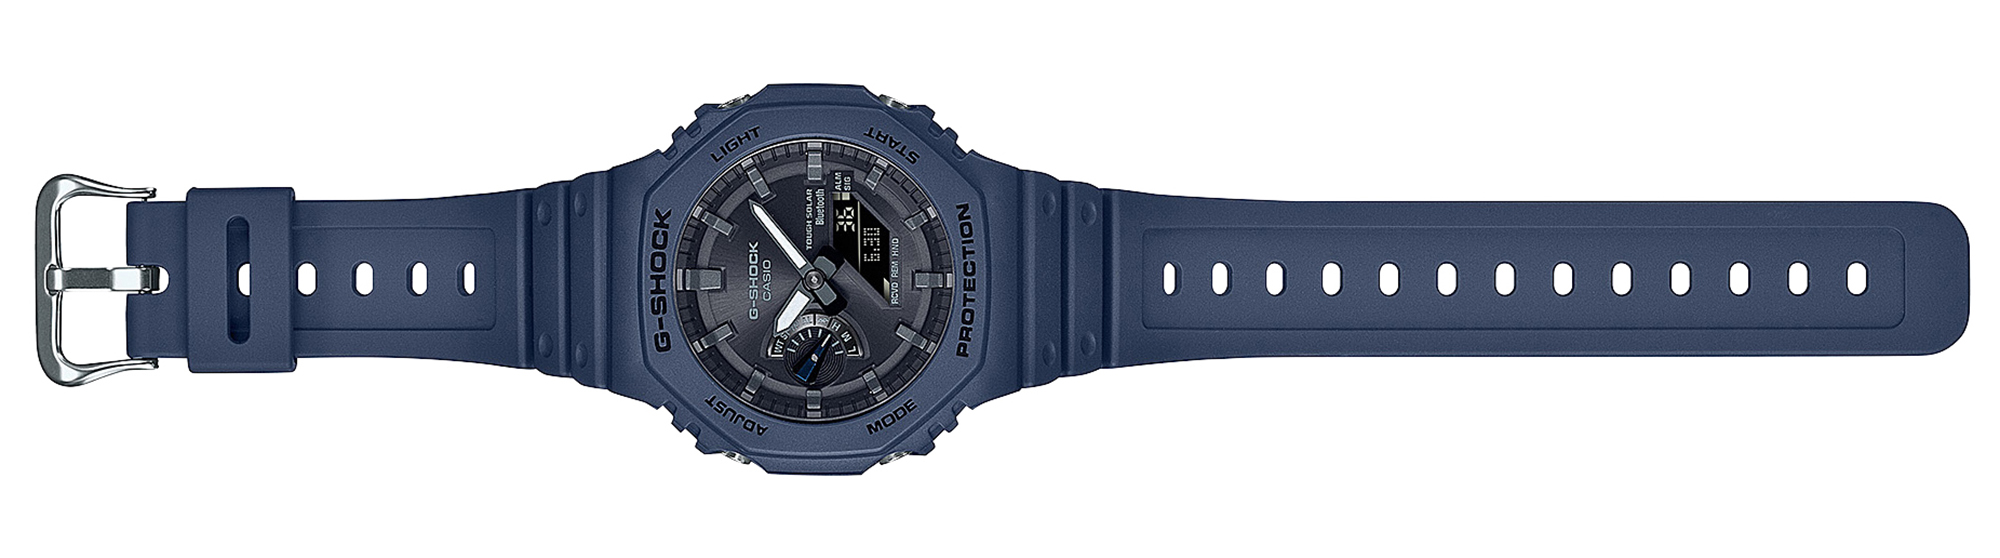 Casio Debuts G-Shock GA-B2100 Watch aBlogtoWatch Series 